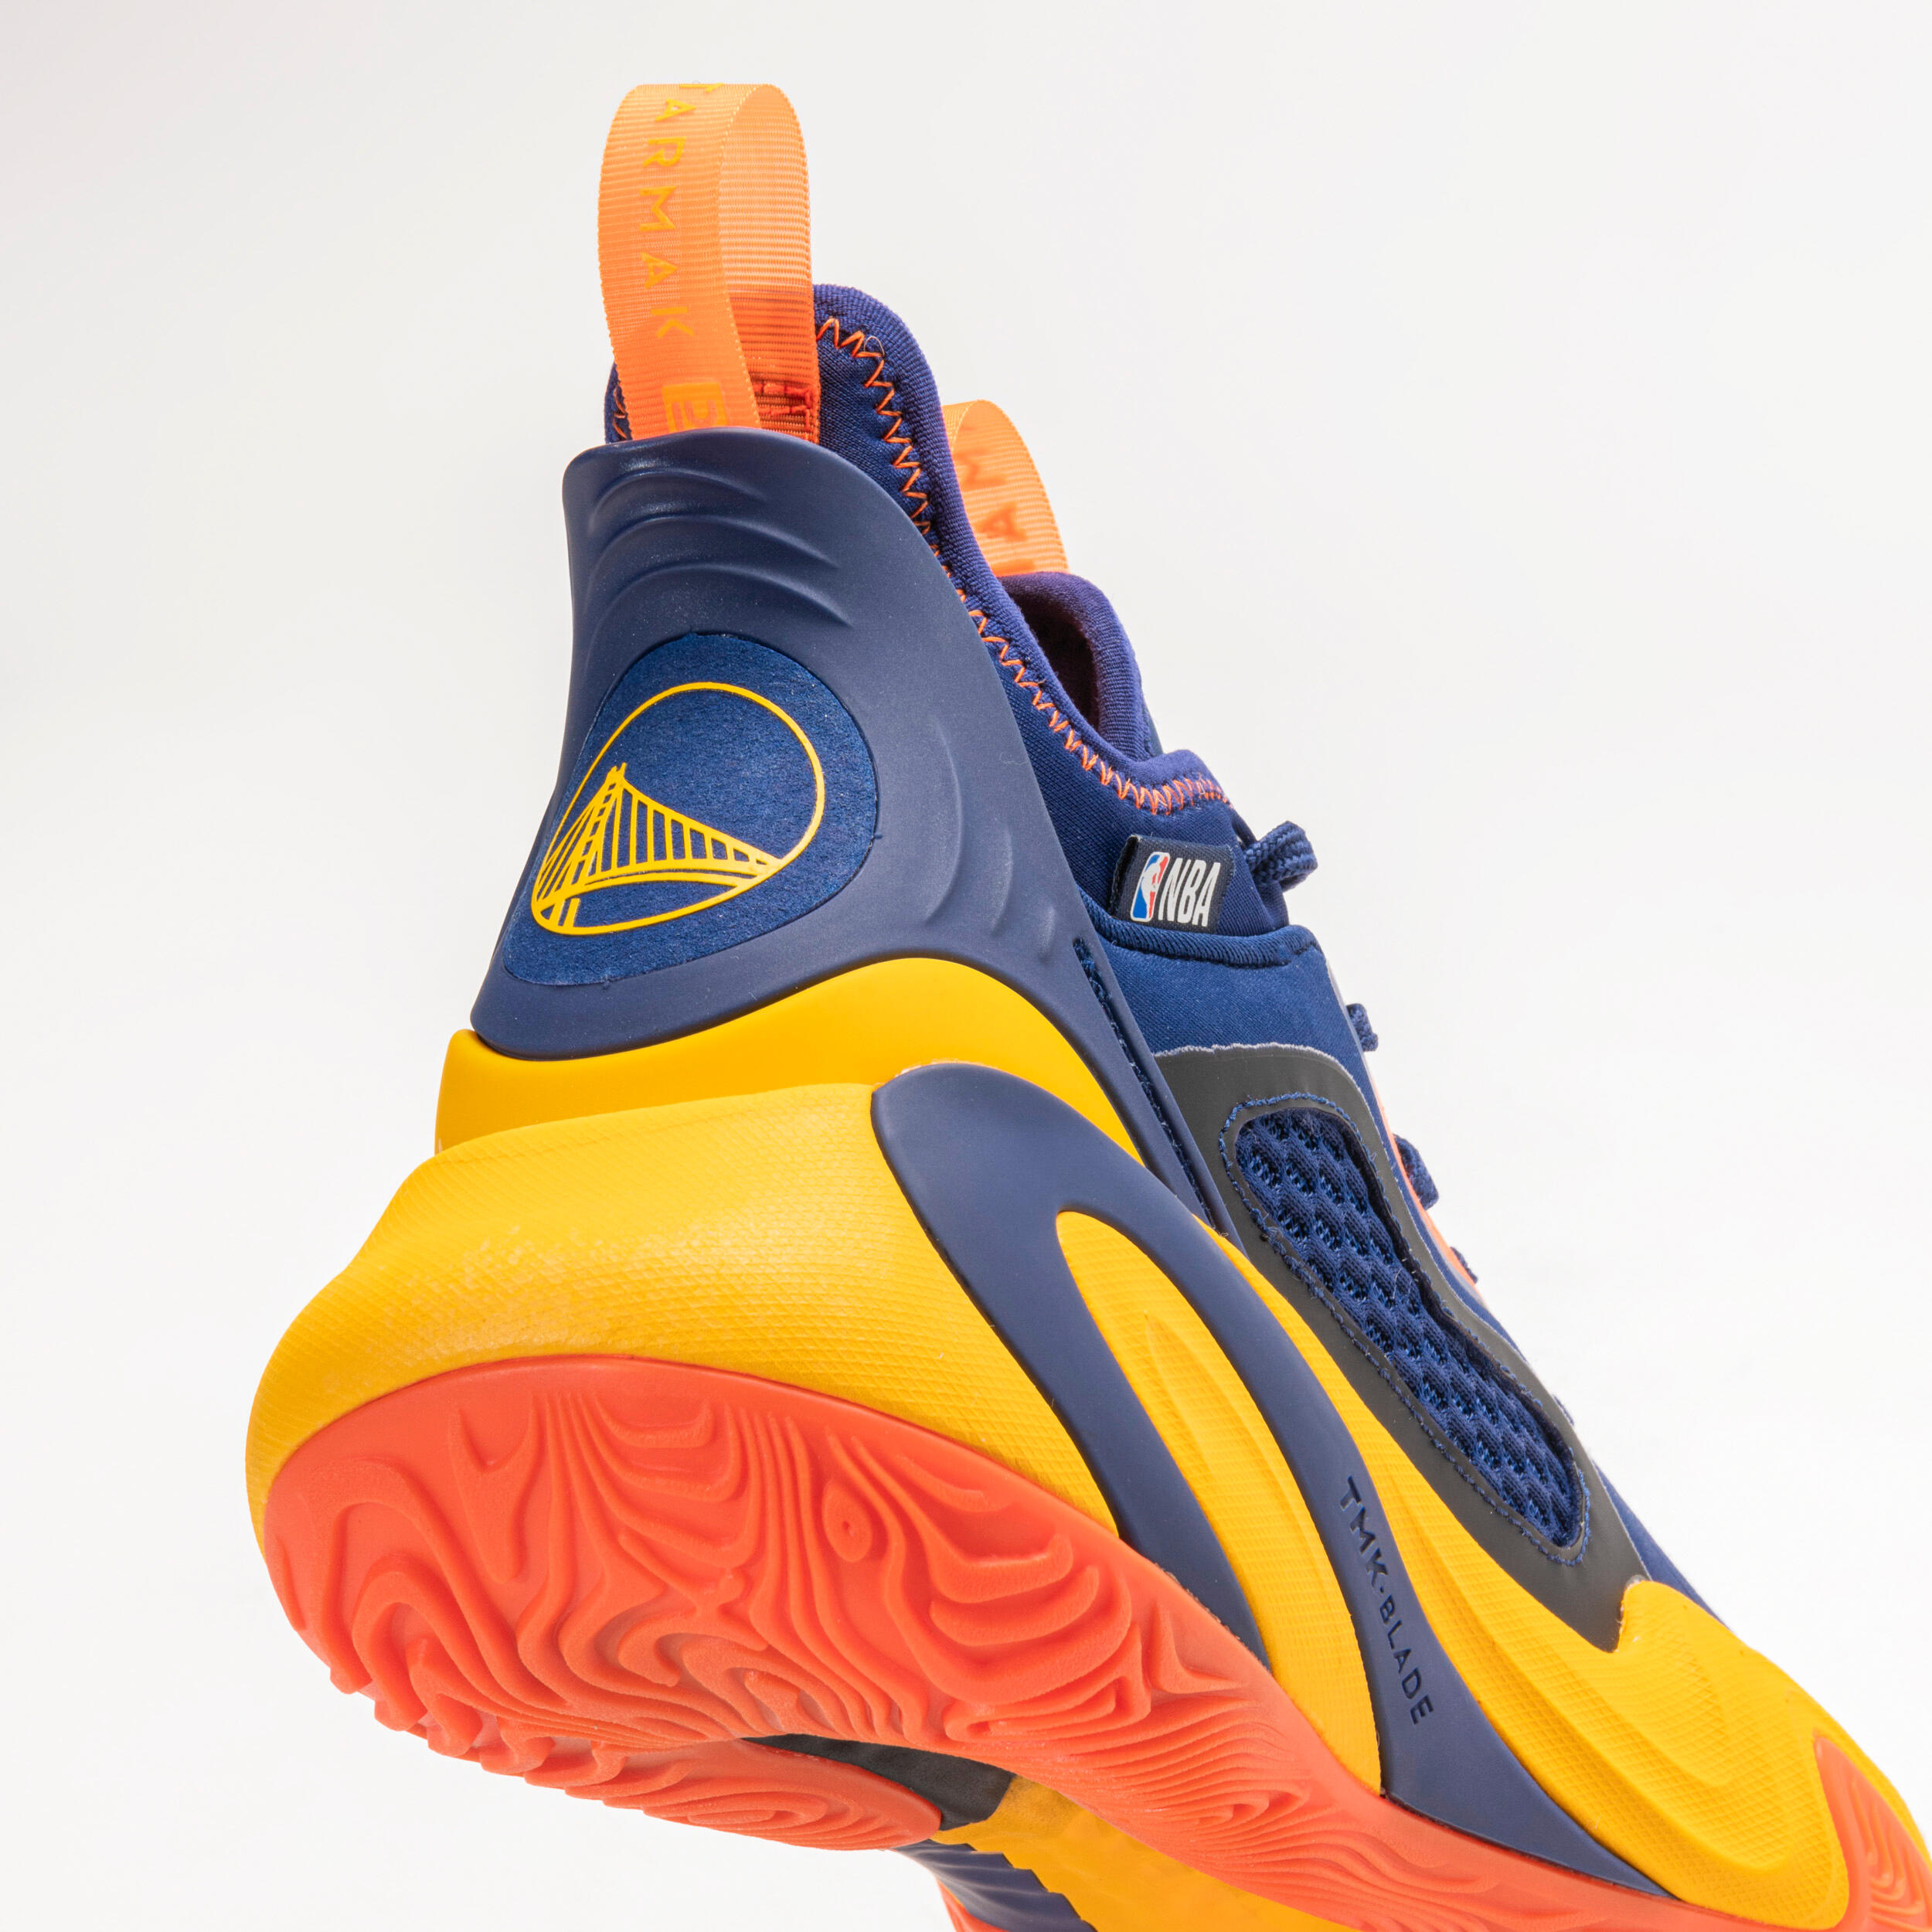 Men's/Women's Basketball Shoes SE900 - Blue/NBA Golden State Warriors 5/10